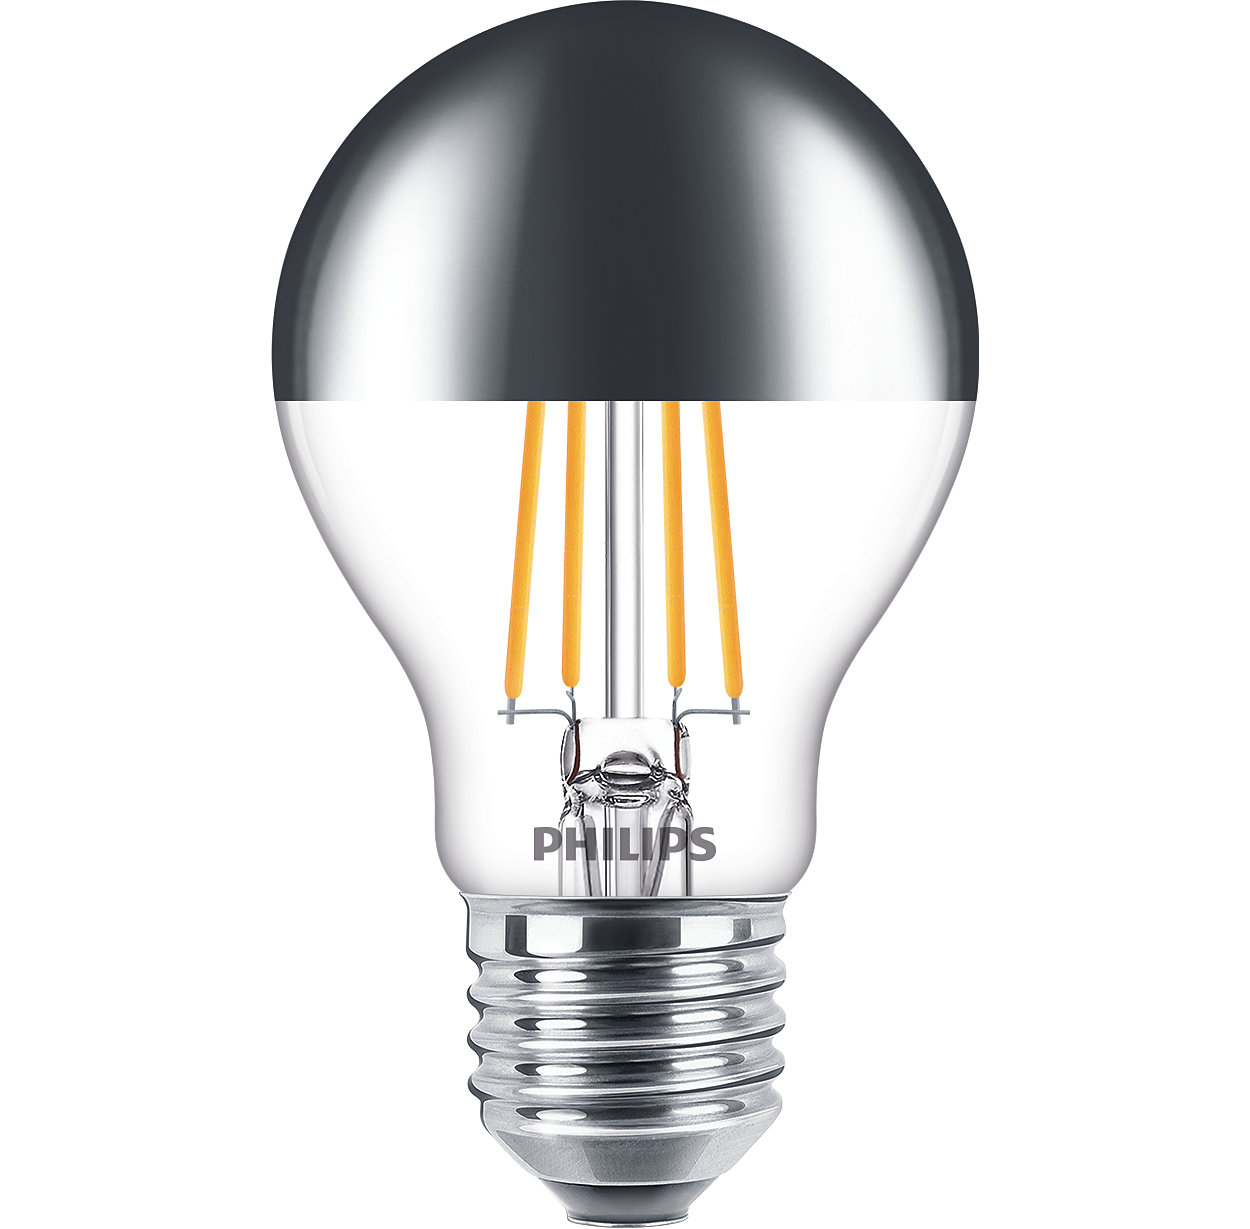 Daha az enerji tüketimi sağlayan dim edilebilir cam LED ampuller